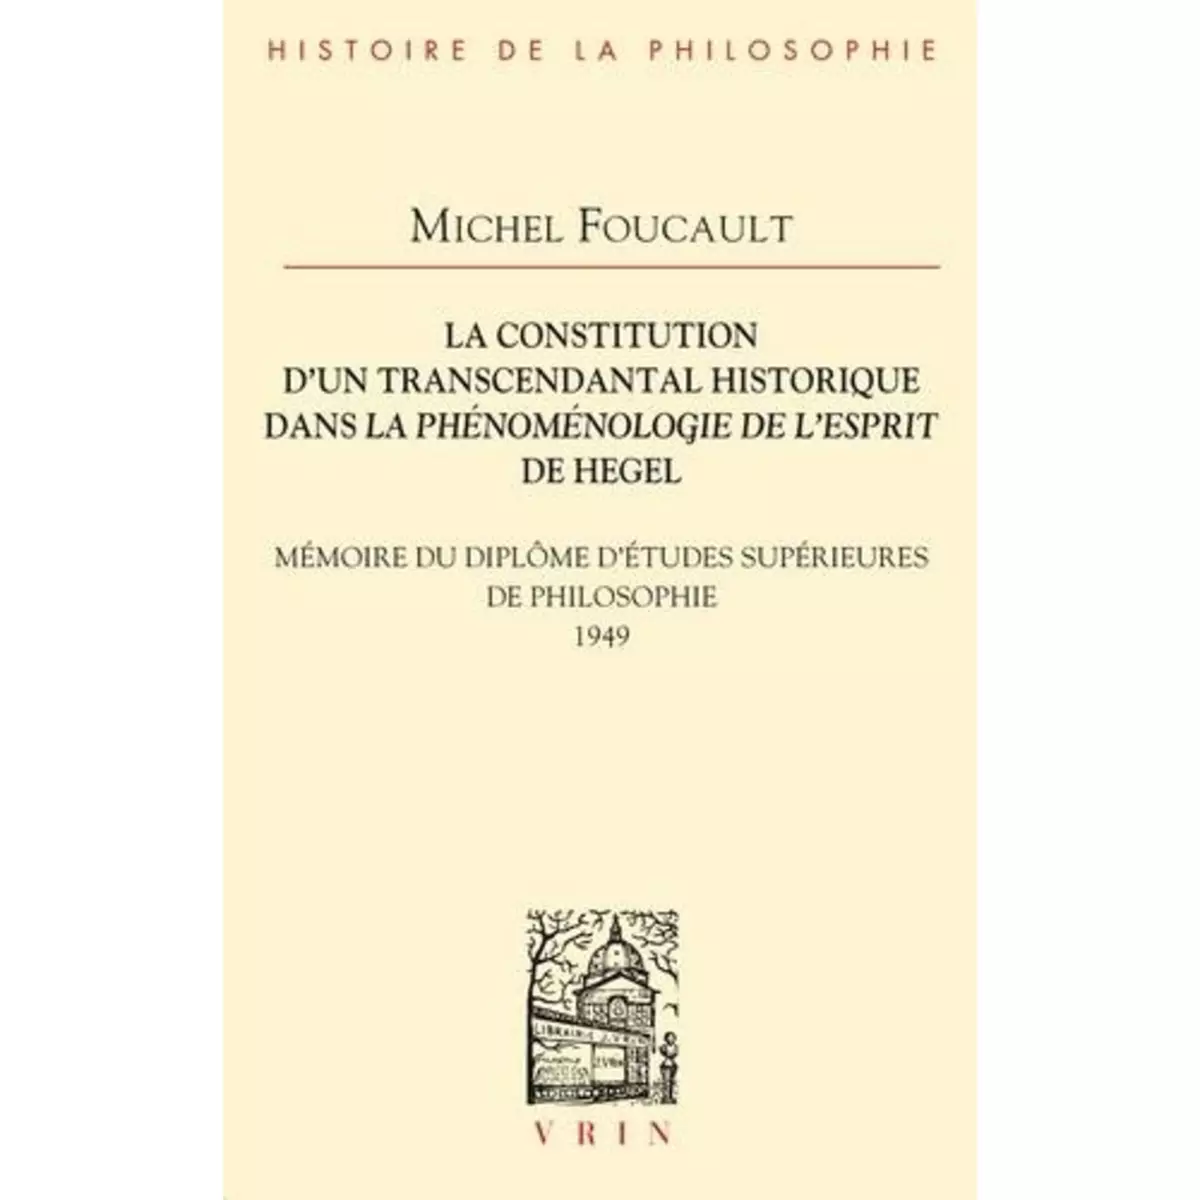  LA CONSTITUTION D'UN TRANSCENDANTAL HISTORIQUE DANS LA PHENOMENOLOGIE DE L'ESPRIT DE HEGEL. MEMOIRE DU DIPLOME D'ETUDES SUPERIEURES DE PHILOSOPHIE, Foucault Michel